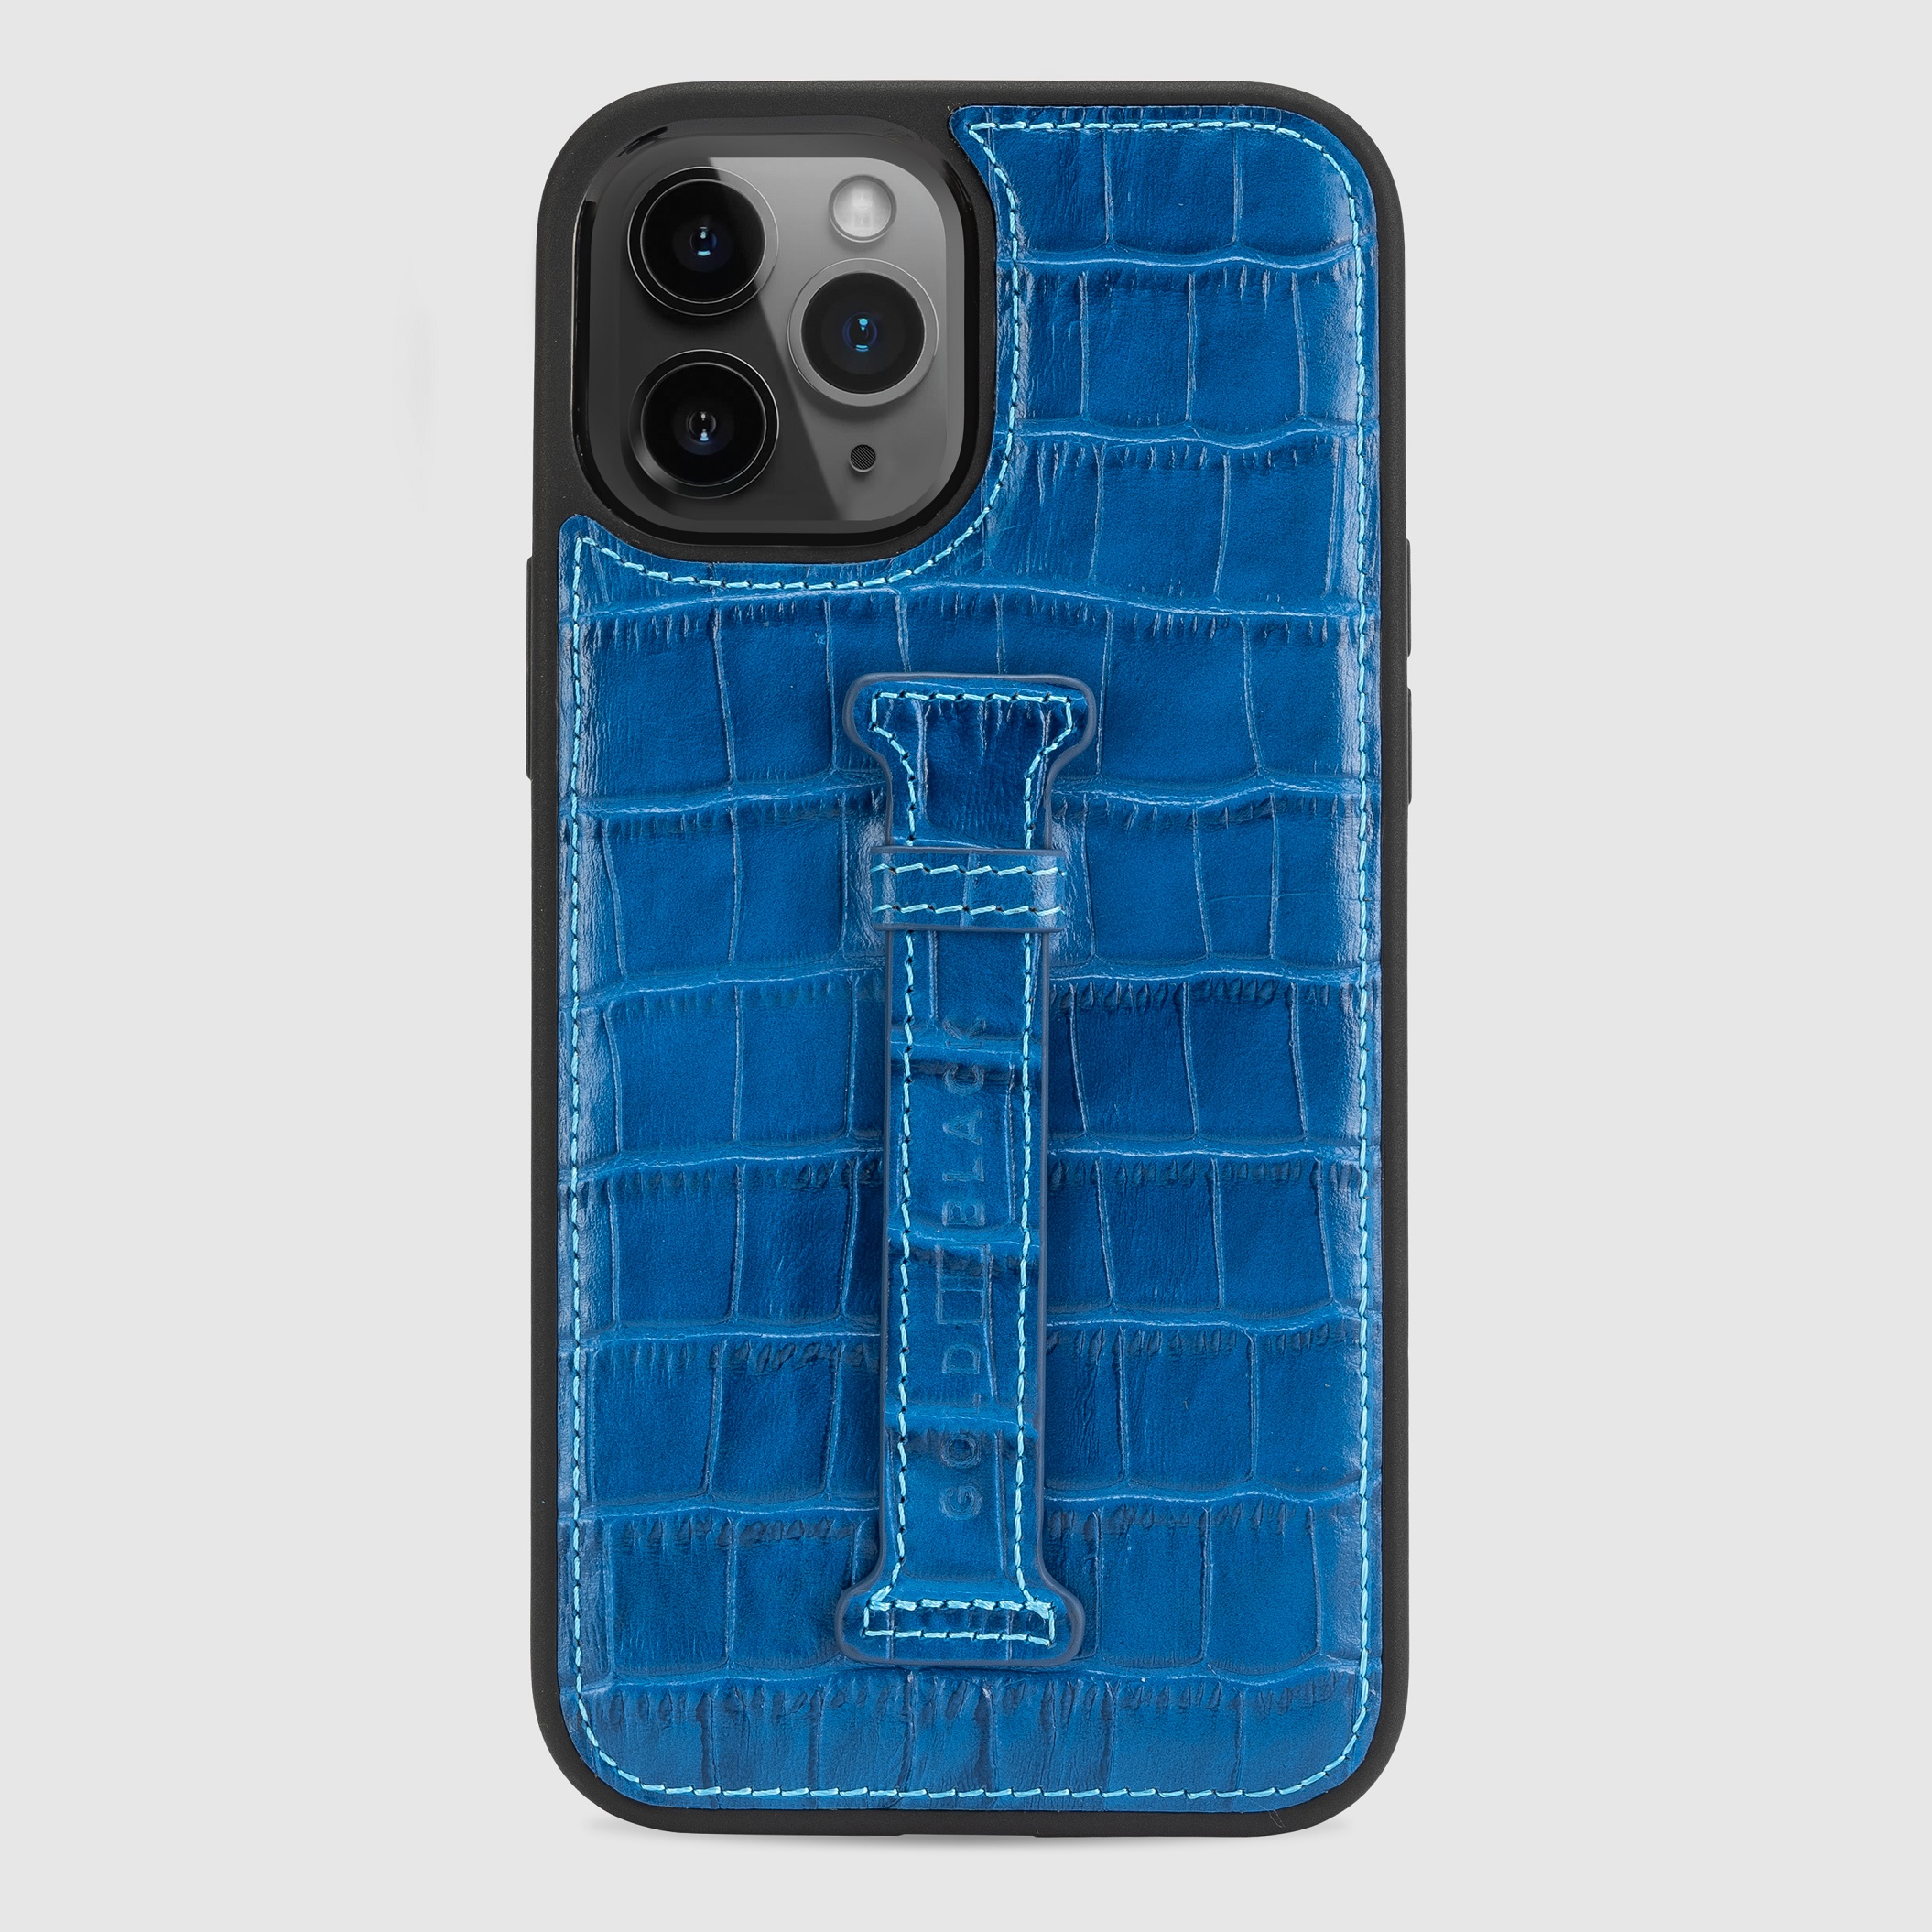 غطاء جوال ايفون 12 برو ماكس مع حامل الاصبع (كروكو) - ازرق